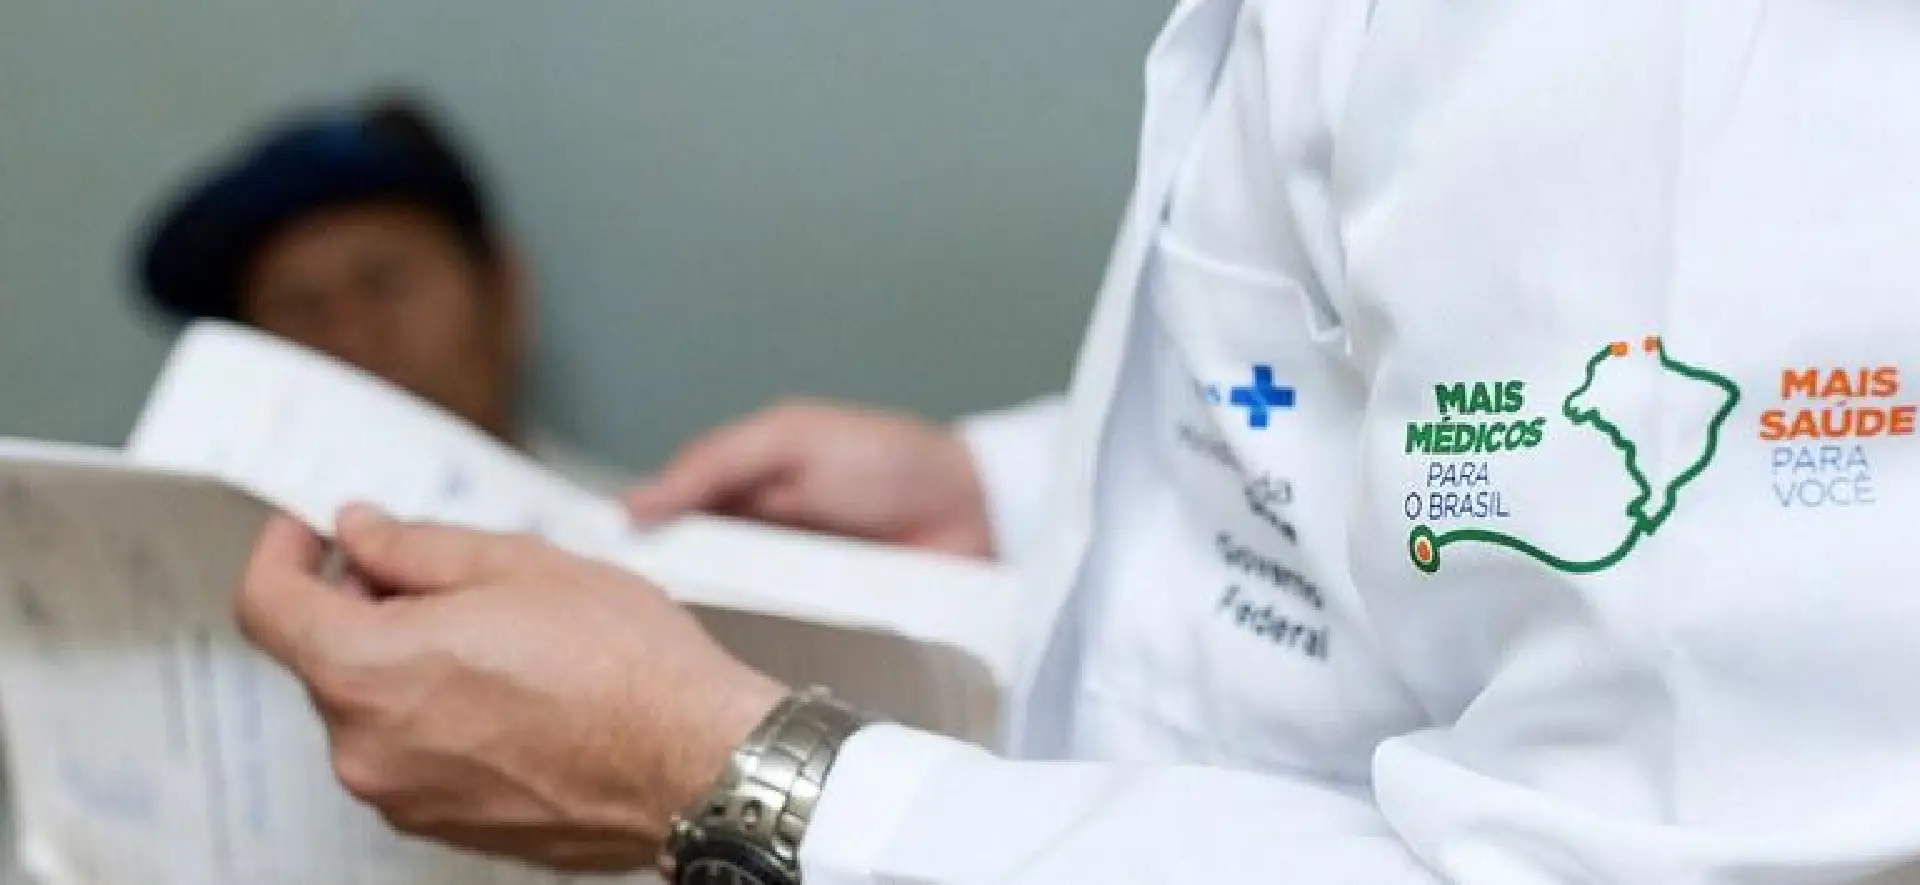 Ministério da Saúde anuncia 19 vagas do Programa Mais Médicos em Roraima